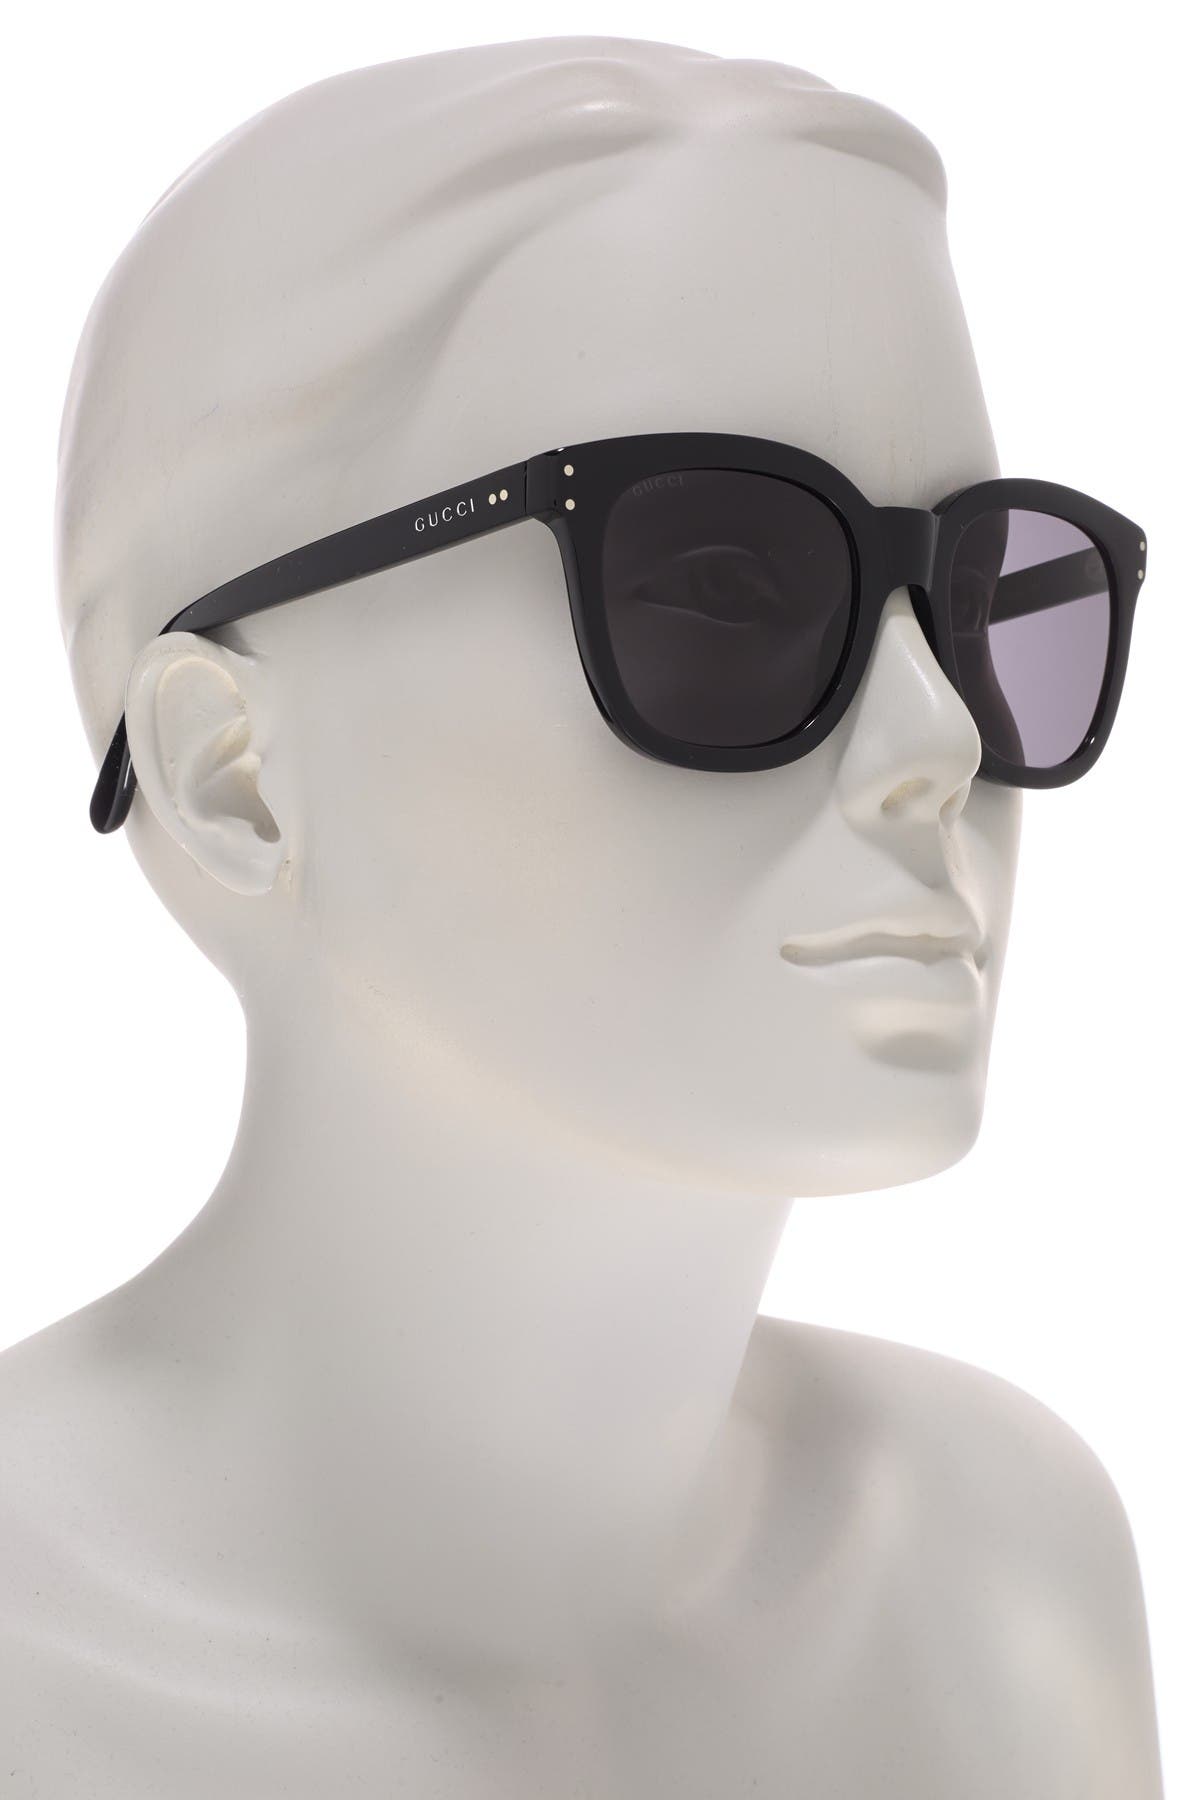 gucci 50mm round sunglasses